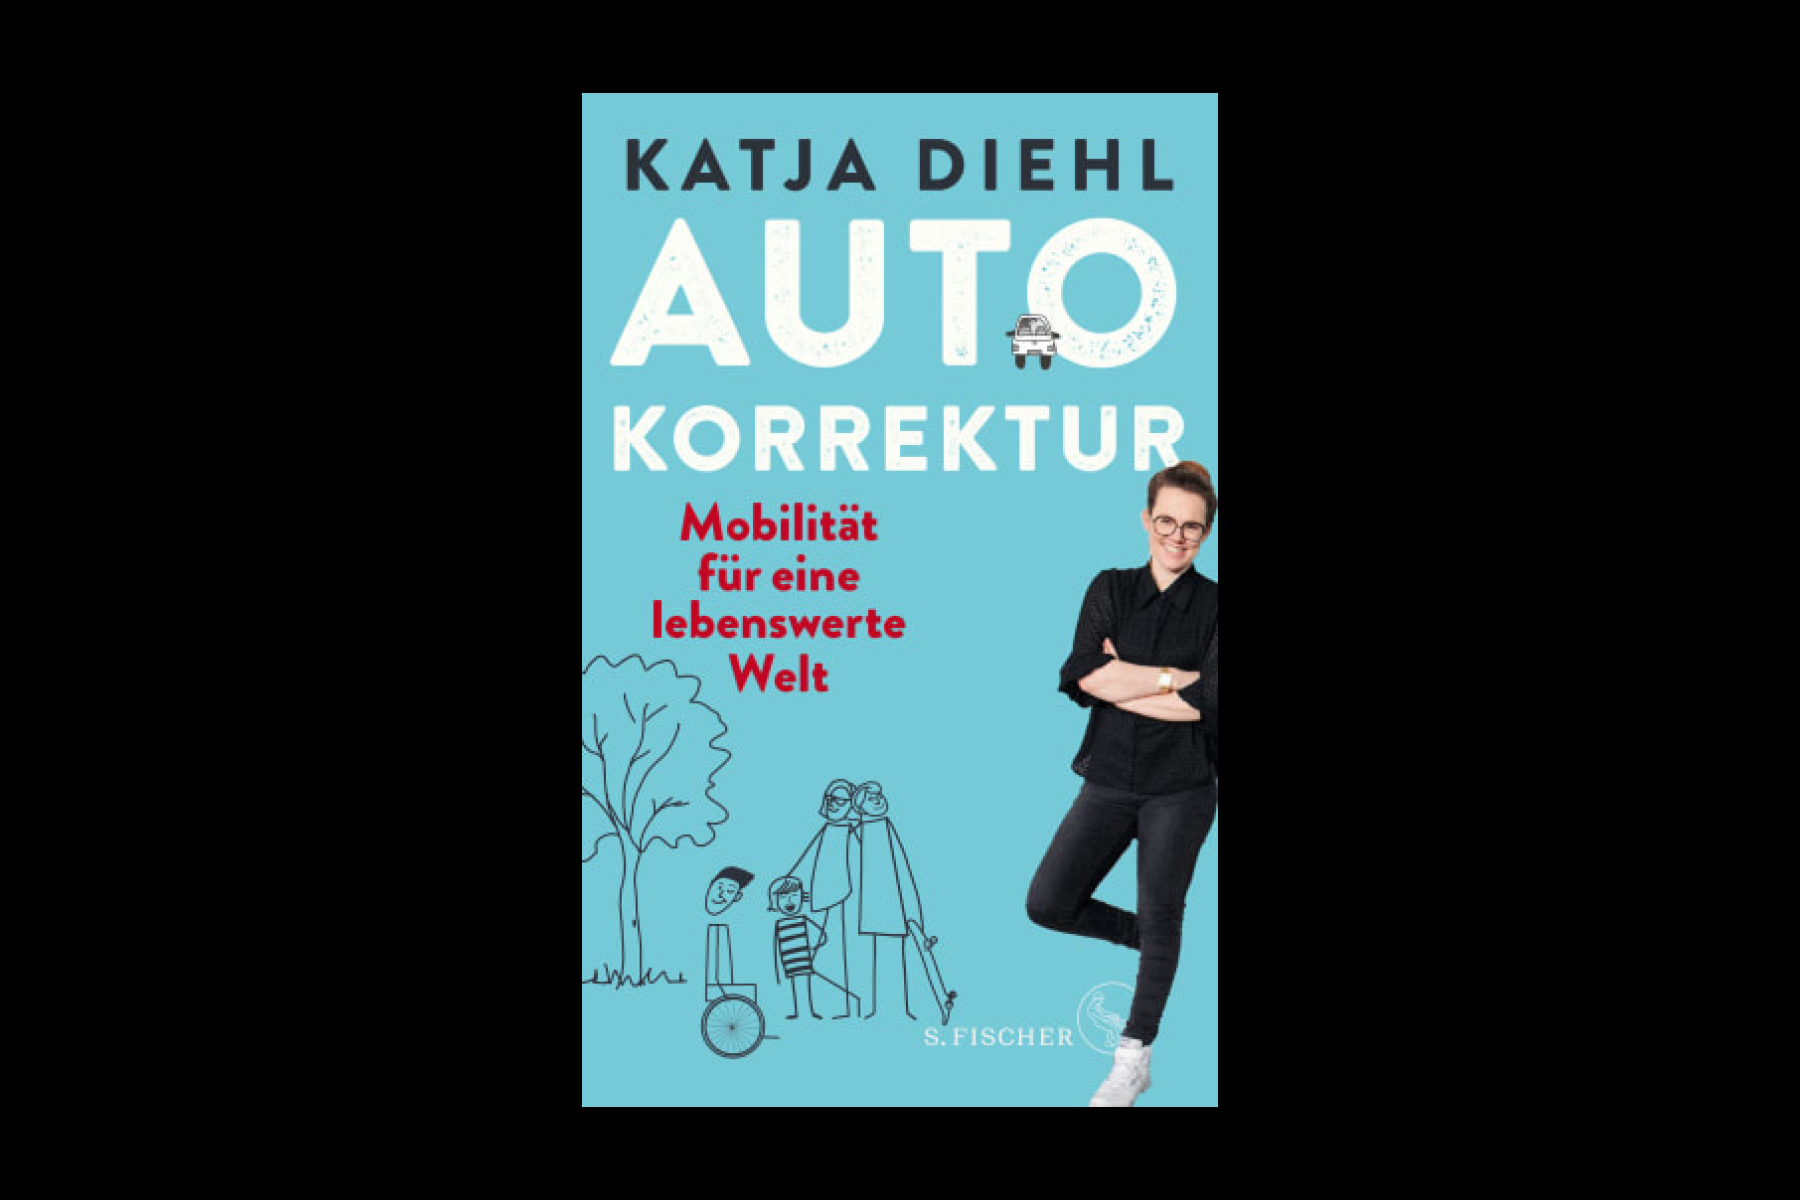 Katja Diehl gewinnt den Leserpreis des Deutschen Wirtschaftsbuchpreises